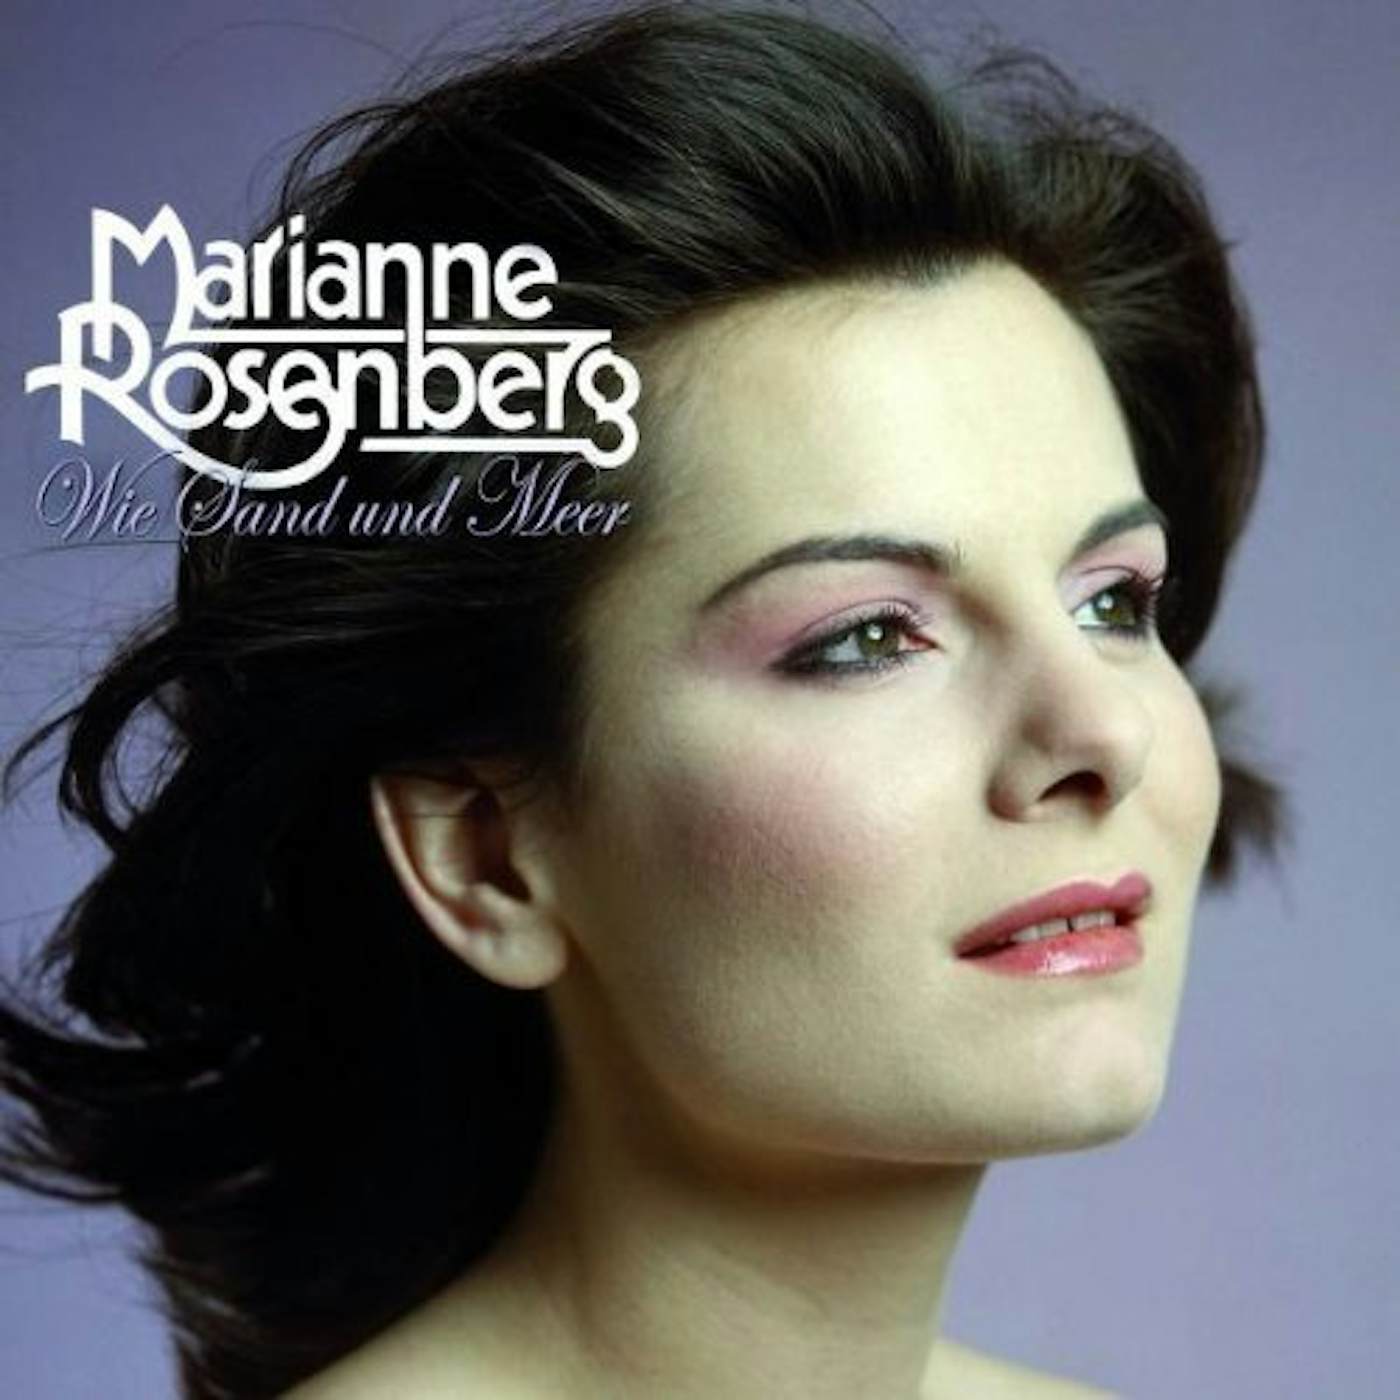 Marianne Rosenberg WIE SAND & MEER CD